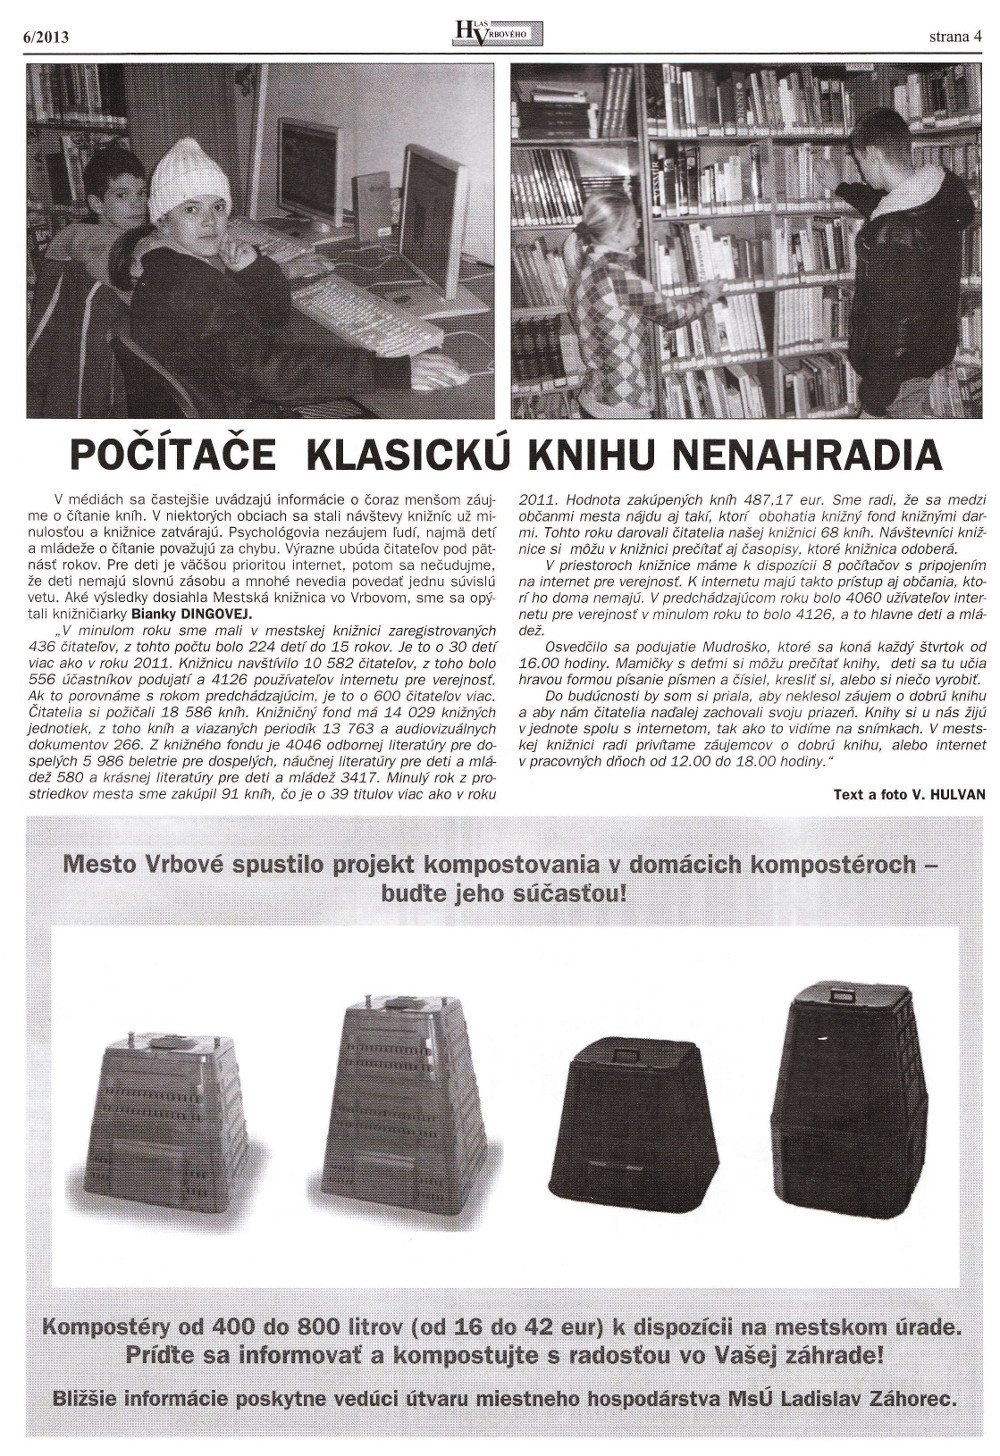 Hlas Vrbového 06/2013, strana 4